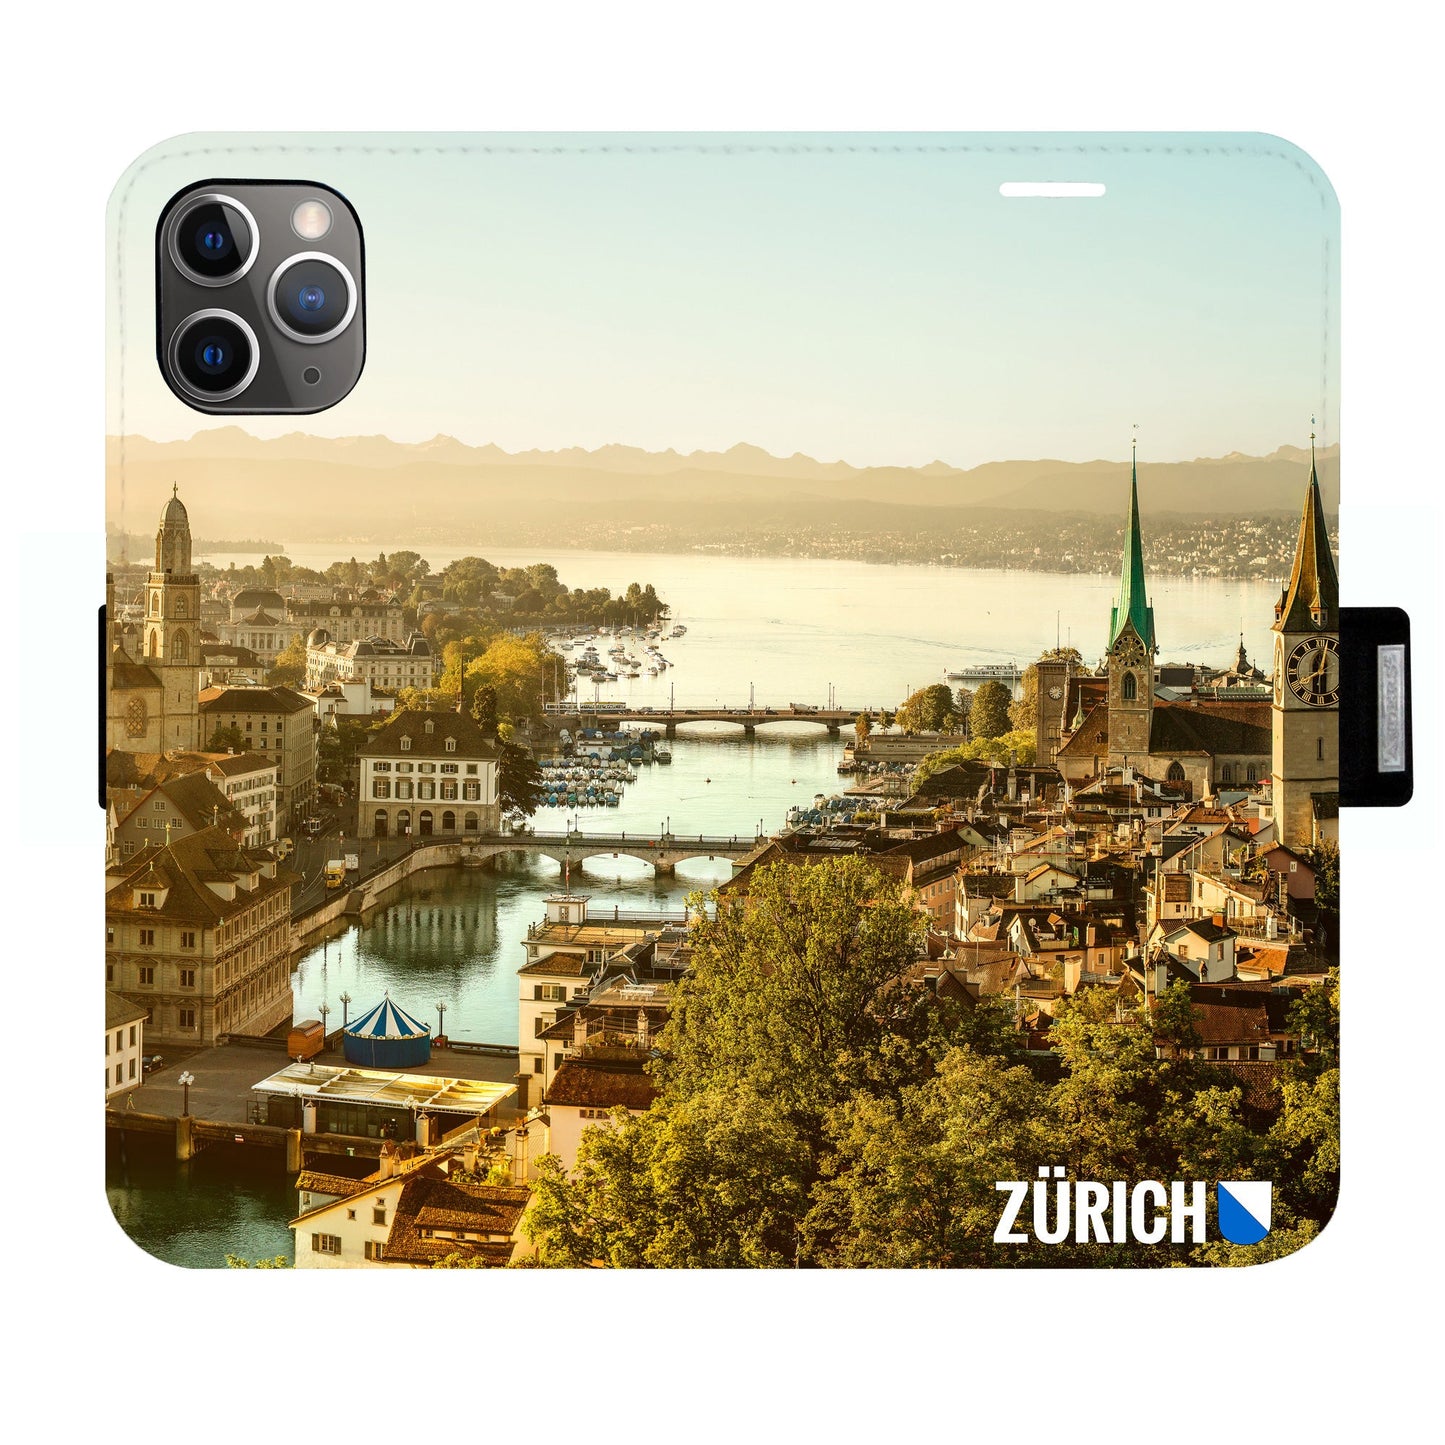 Zürich City von Oben Victor Case für iPhone 11 Pro Max